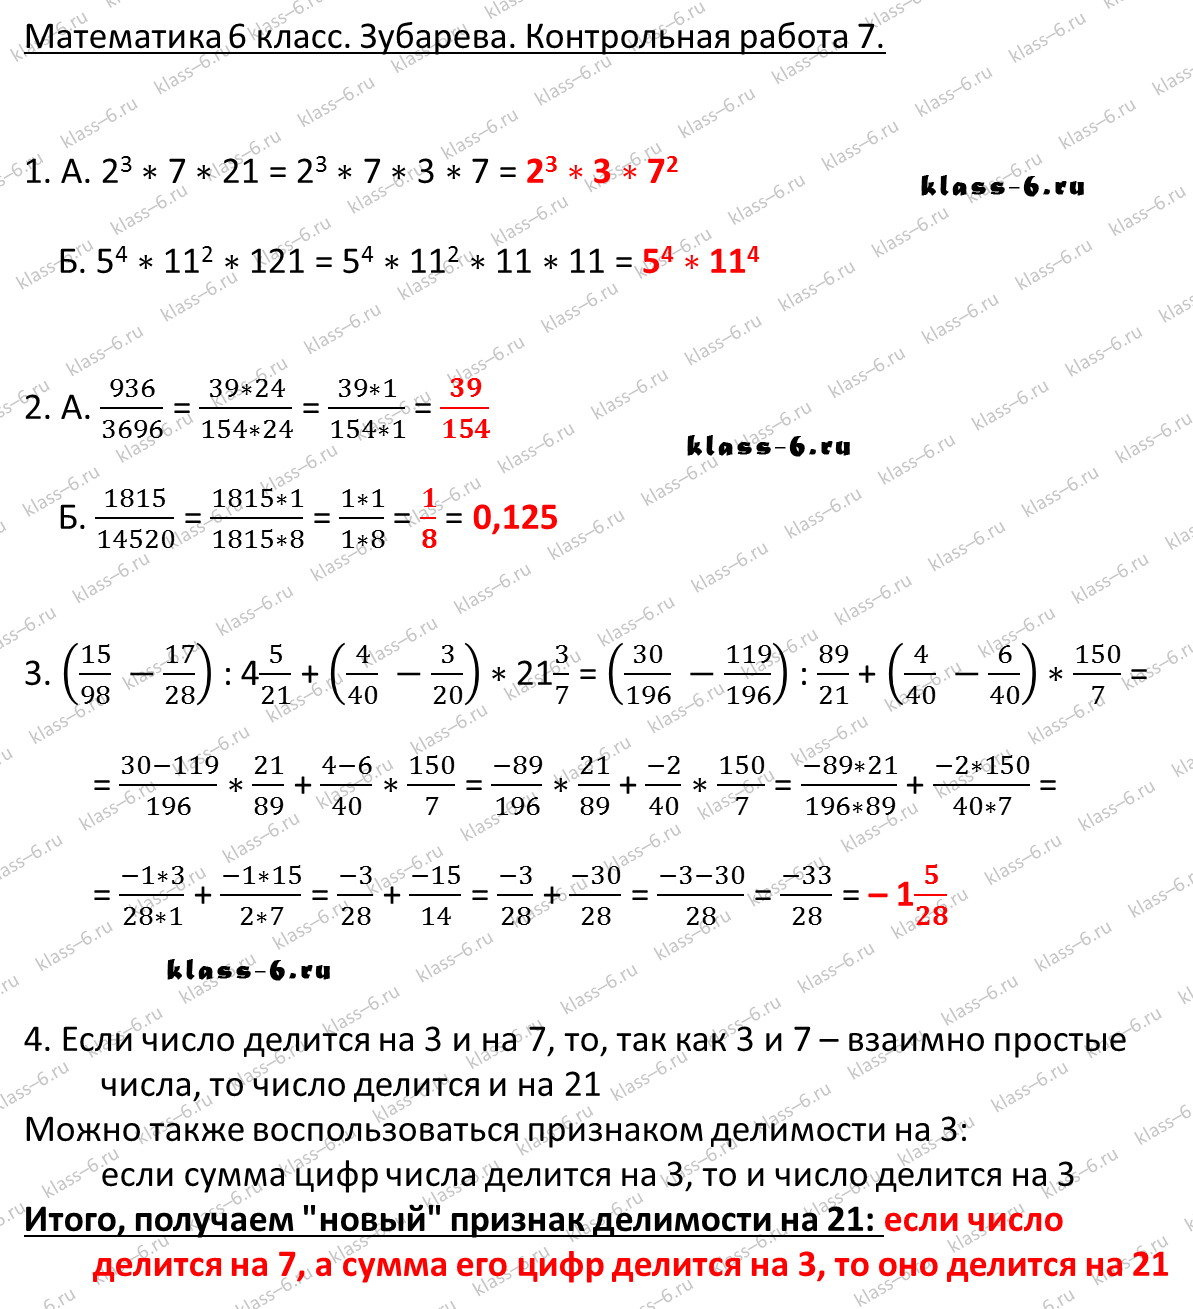 гдз математика Зубарева 6 класс ответ и подробное решение с объяснениями контрольной работы № 7